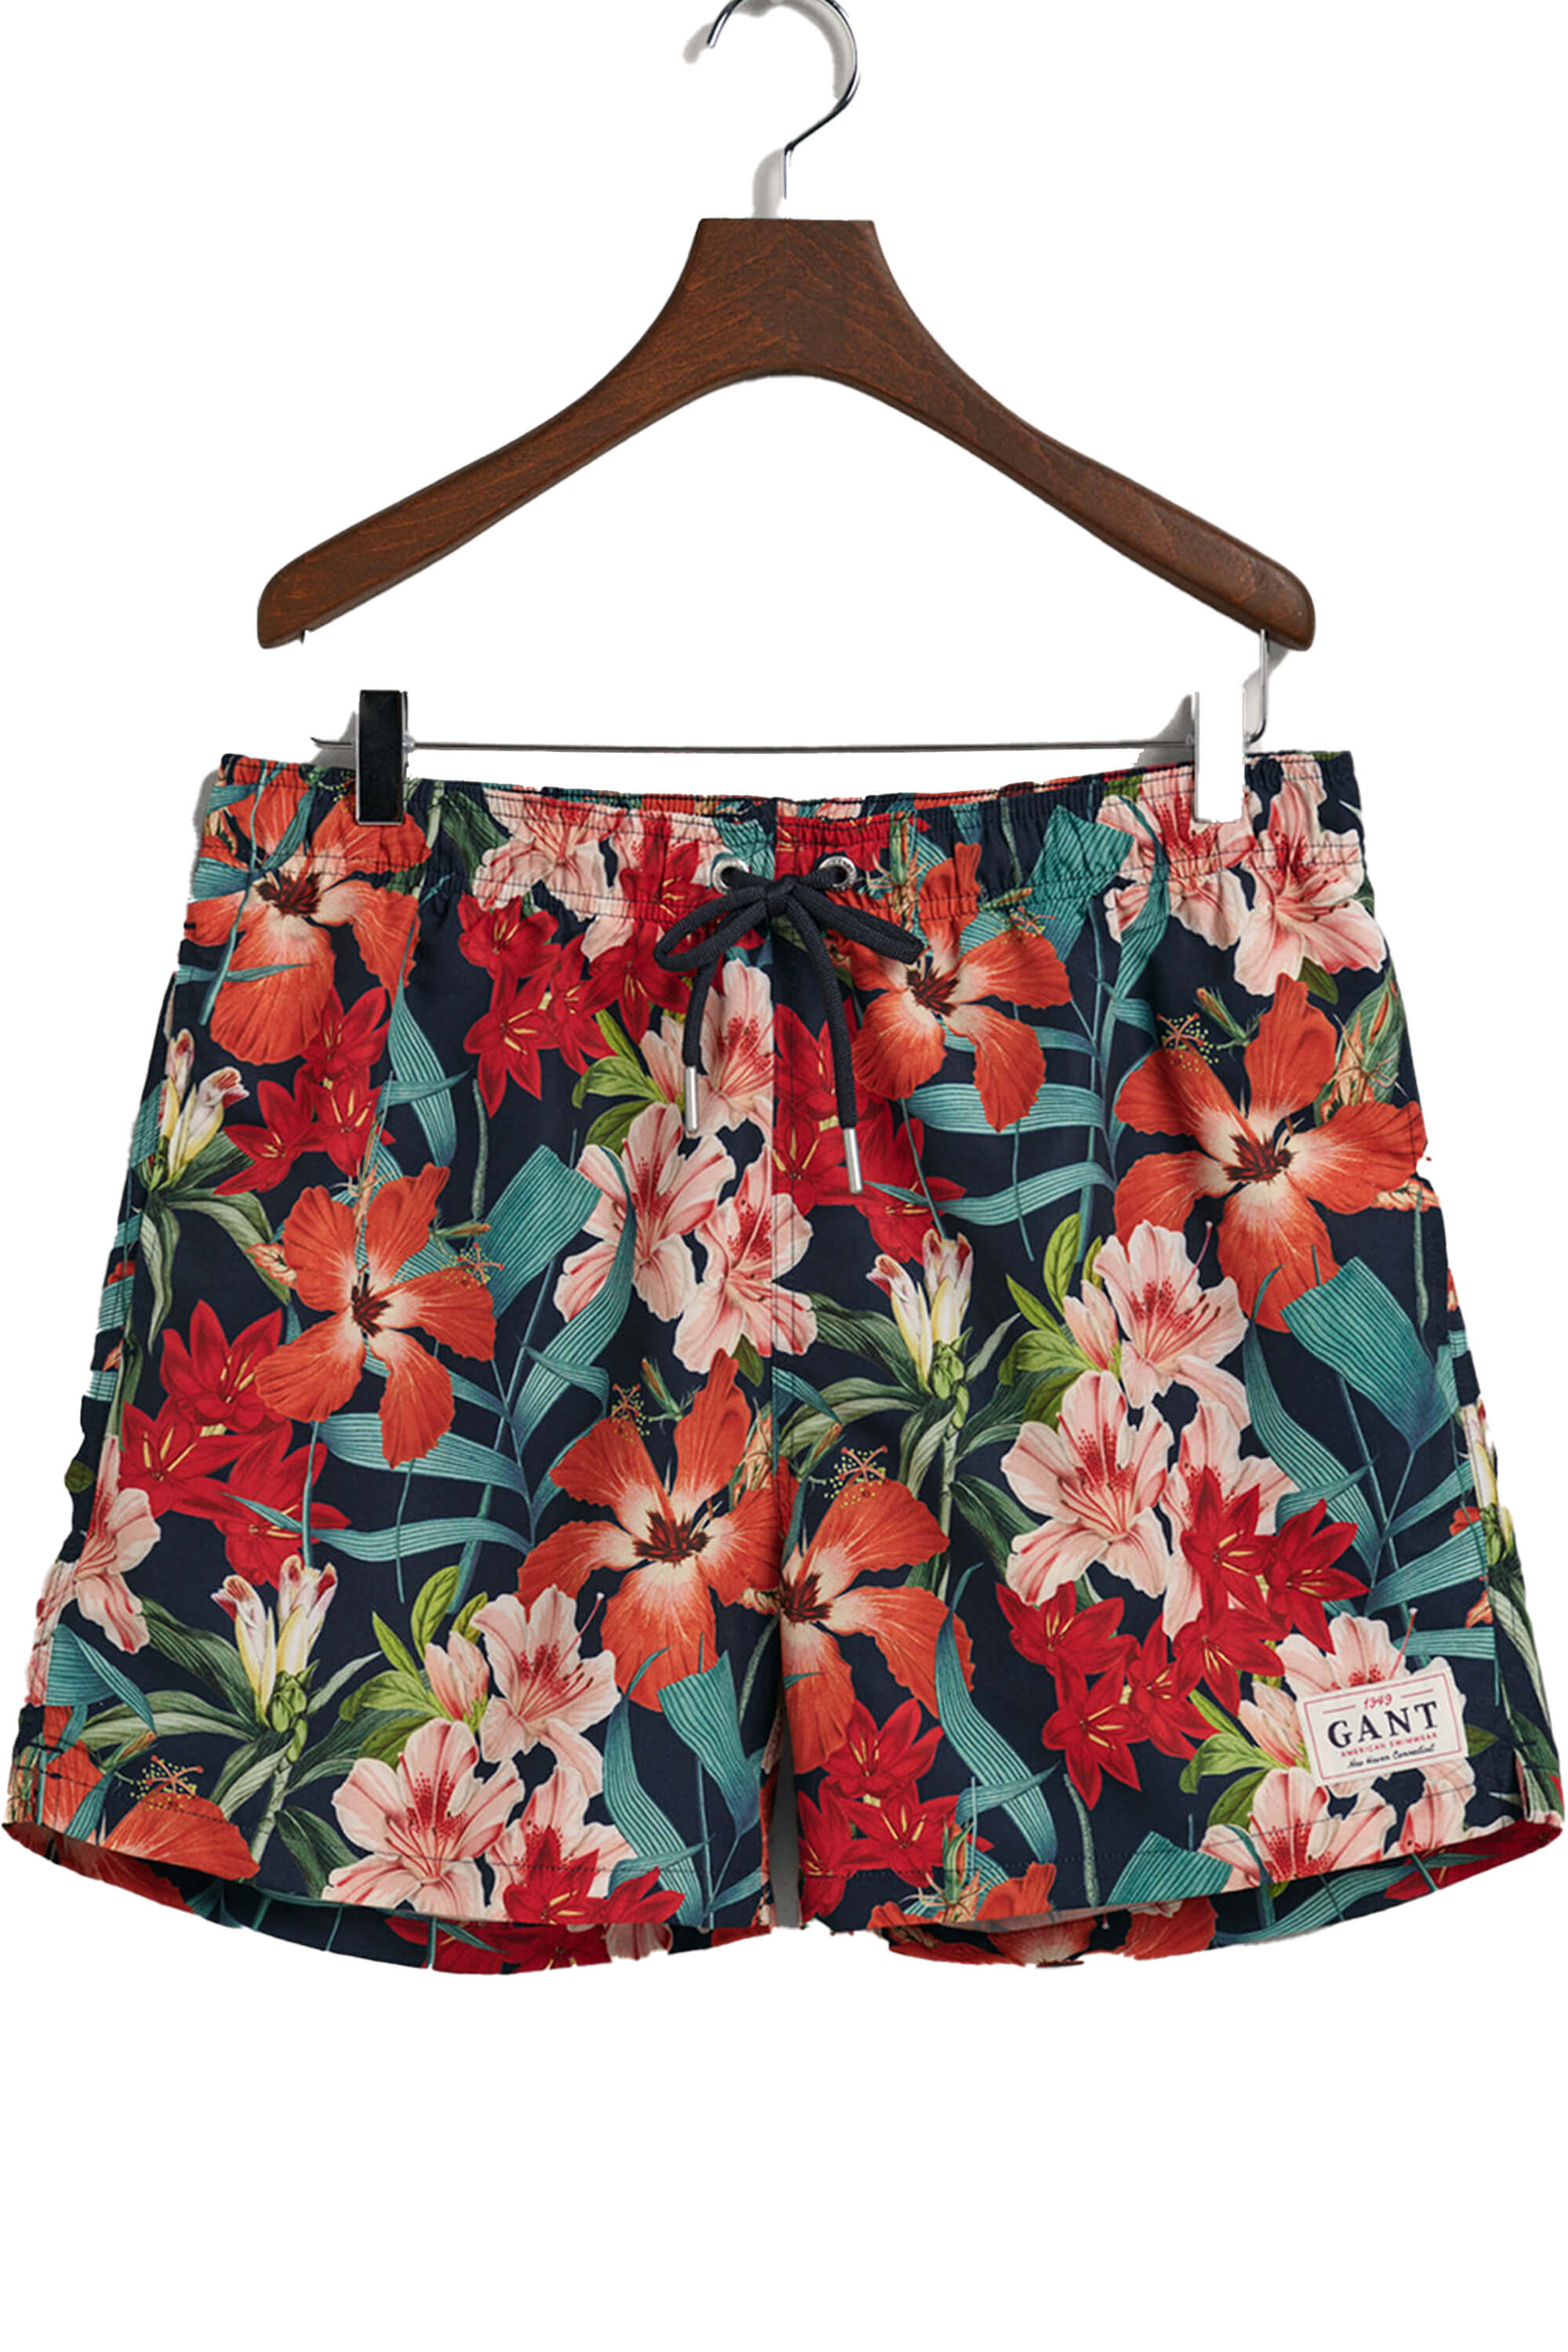 Gant Floral Print Swim Shorts Marine